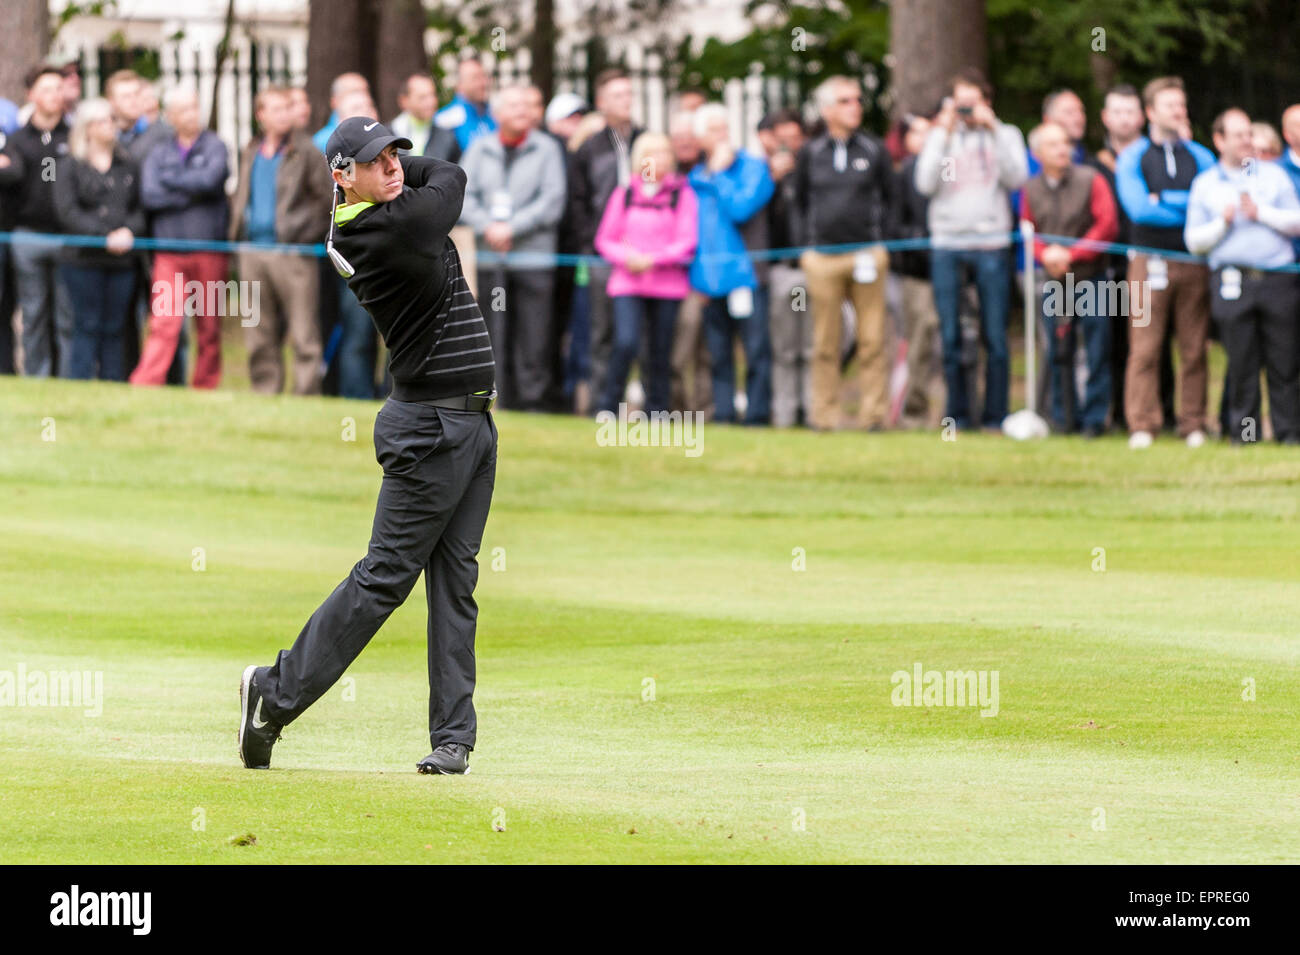 London, UK. 20. Mai 2015.  Weltweit die Nummer eins, Rory McIlroy, auf dem Fairway während der BMW PGA Championship 2015 pro-am im Wentworth Club, Surrey. Bildnachweis: Stephen Chung / Alamy Live News Stockfoto